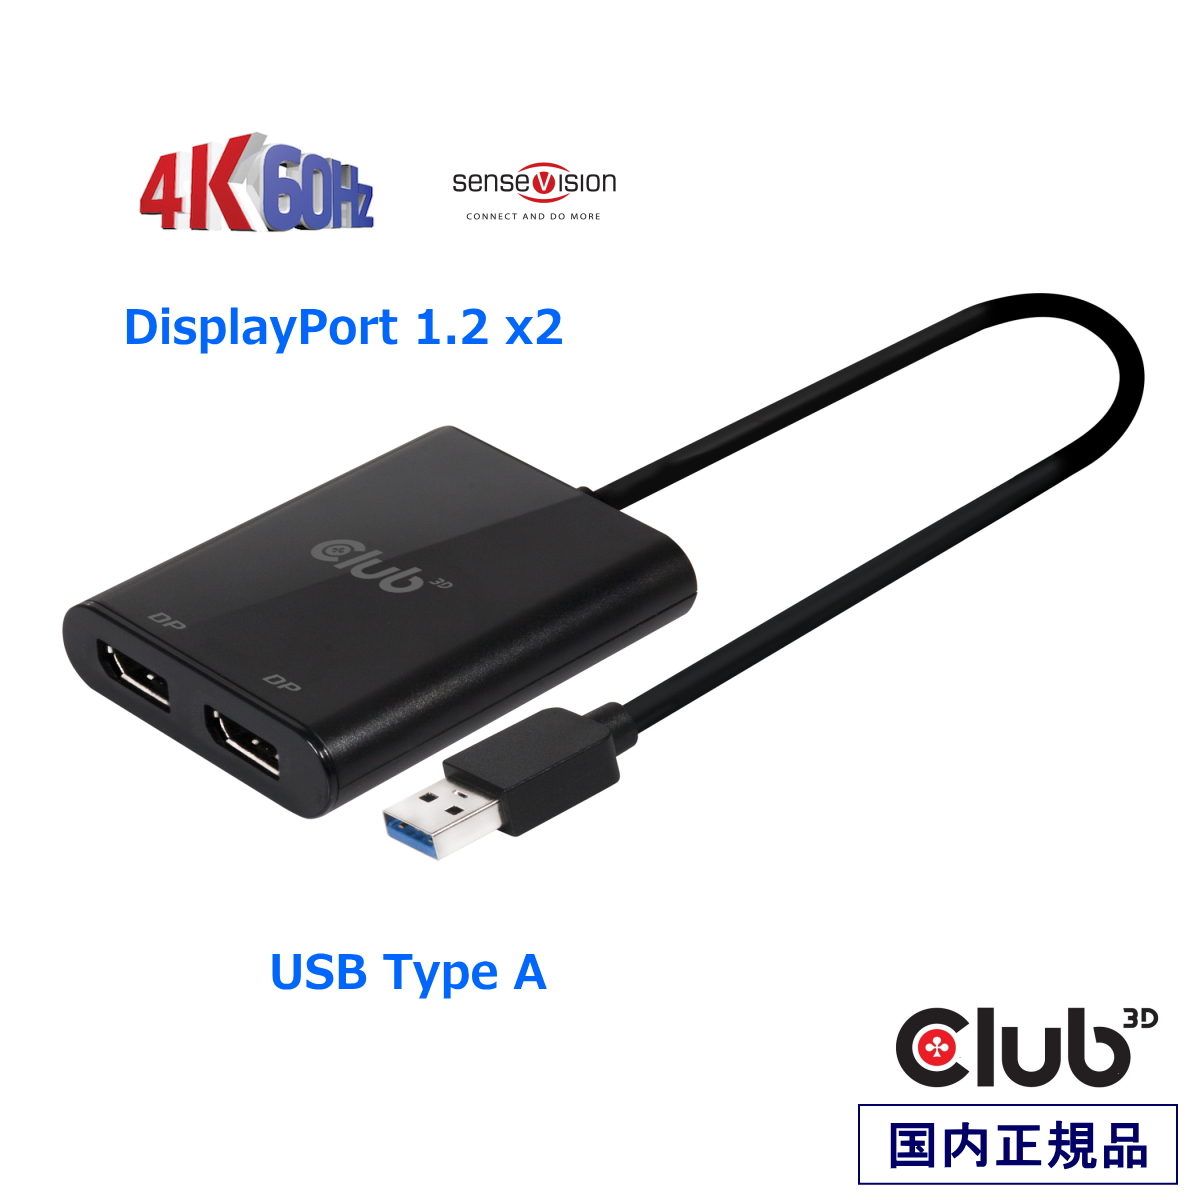 デポー お値打ち価格で USB Type A４K60Hz デュアル DisplayPort スプリッター 国内正規品 Club3D SenseVision A to 1.2 Dual Monitor 4K 60Hz ディスプレイ 分配ハブ CSV-1477 joshcurry.net joshcurry.net